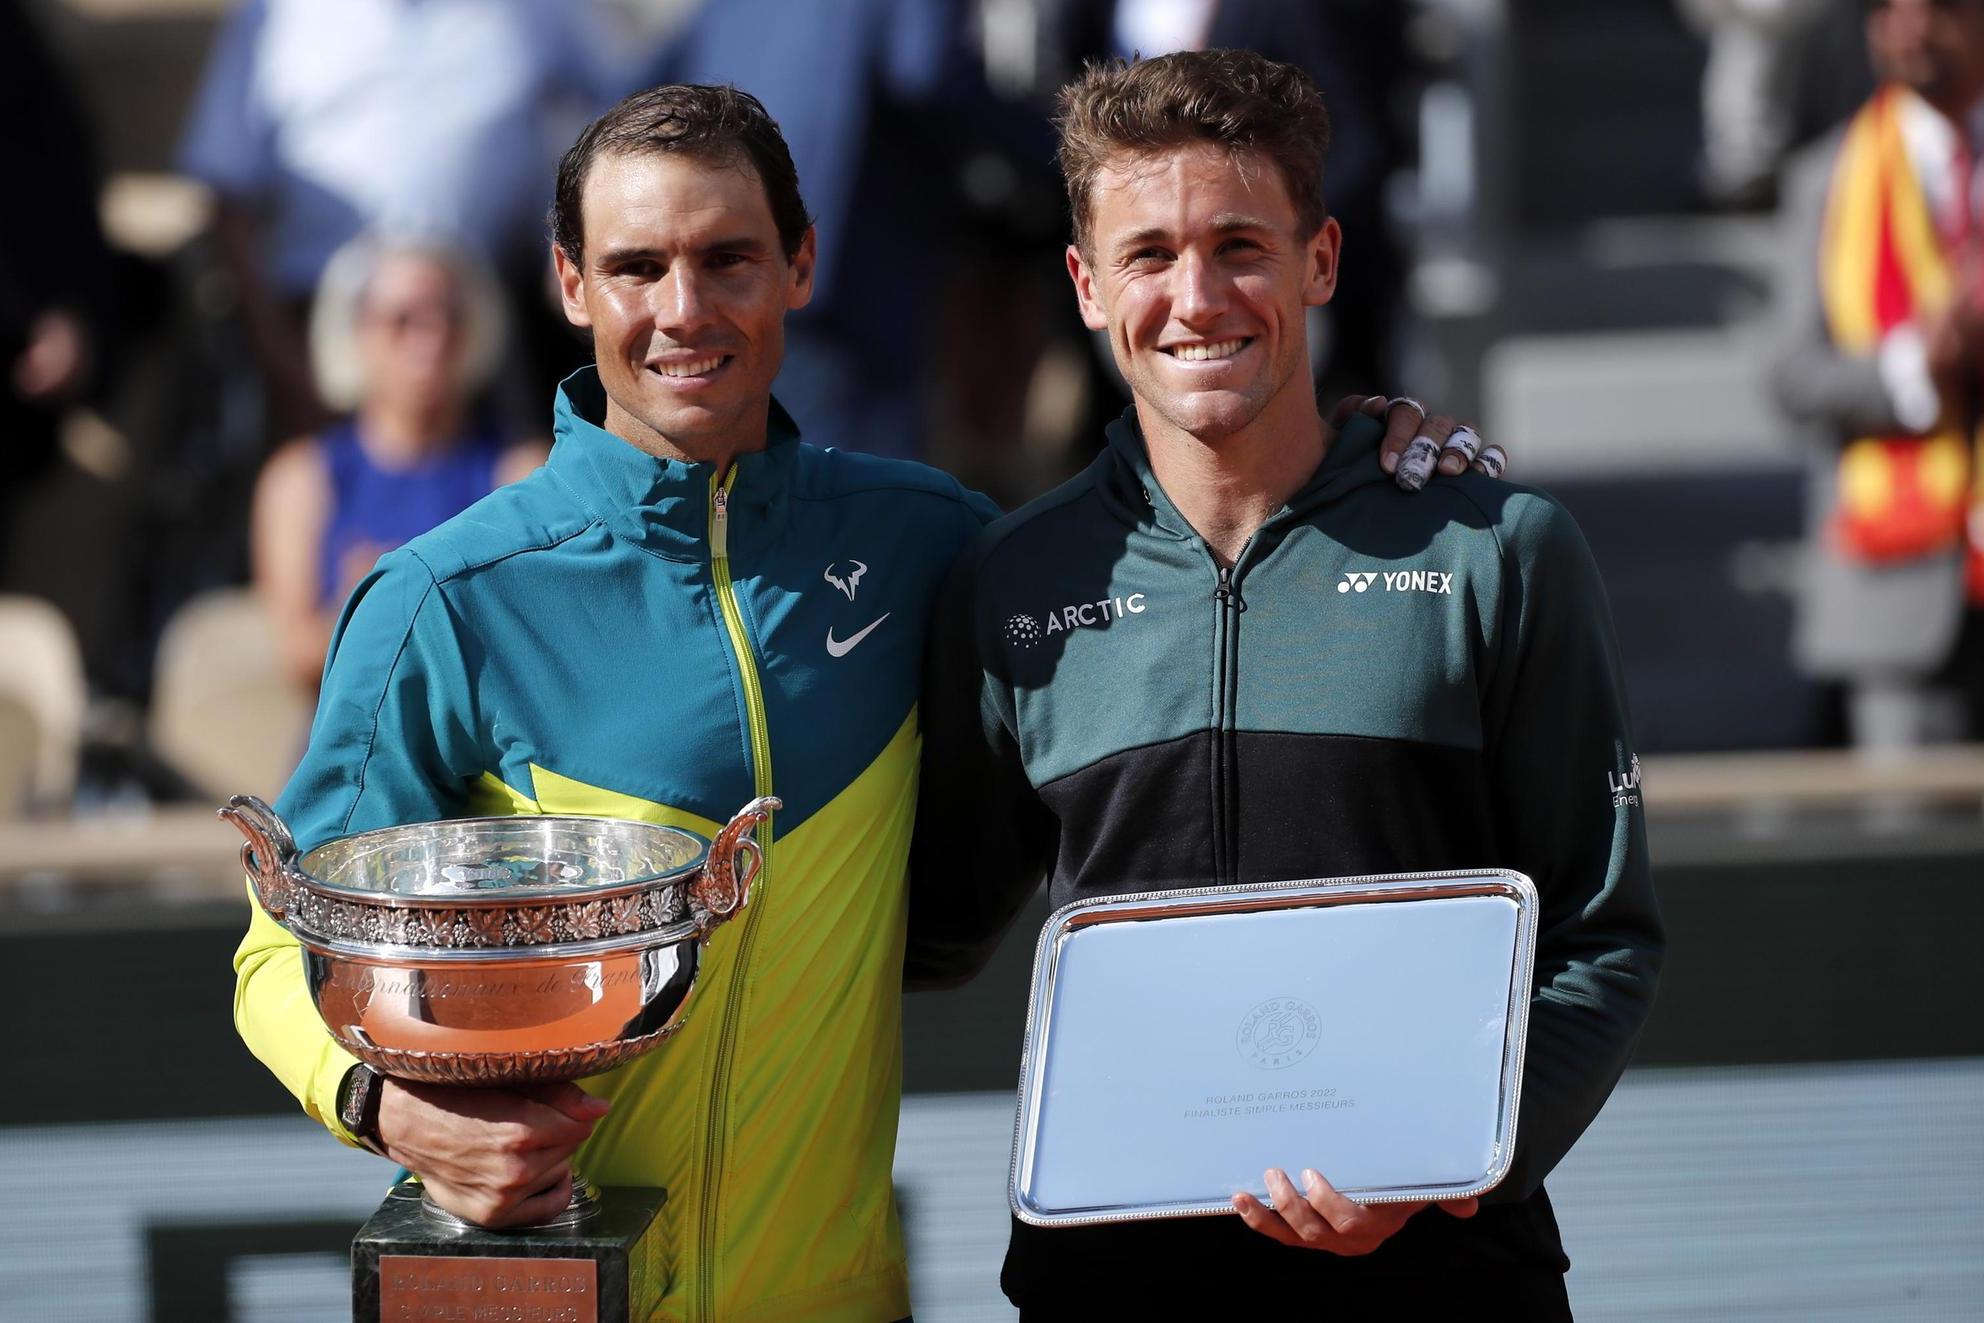 Infinito Rafa Nadal, vince il 14esimo Roland Garros e non molla: “Voglio continuare a lottare”